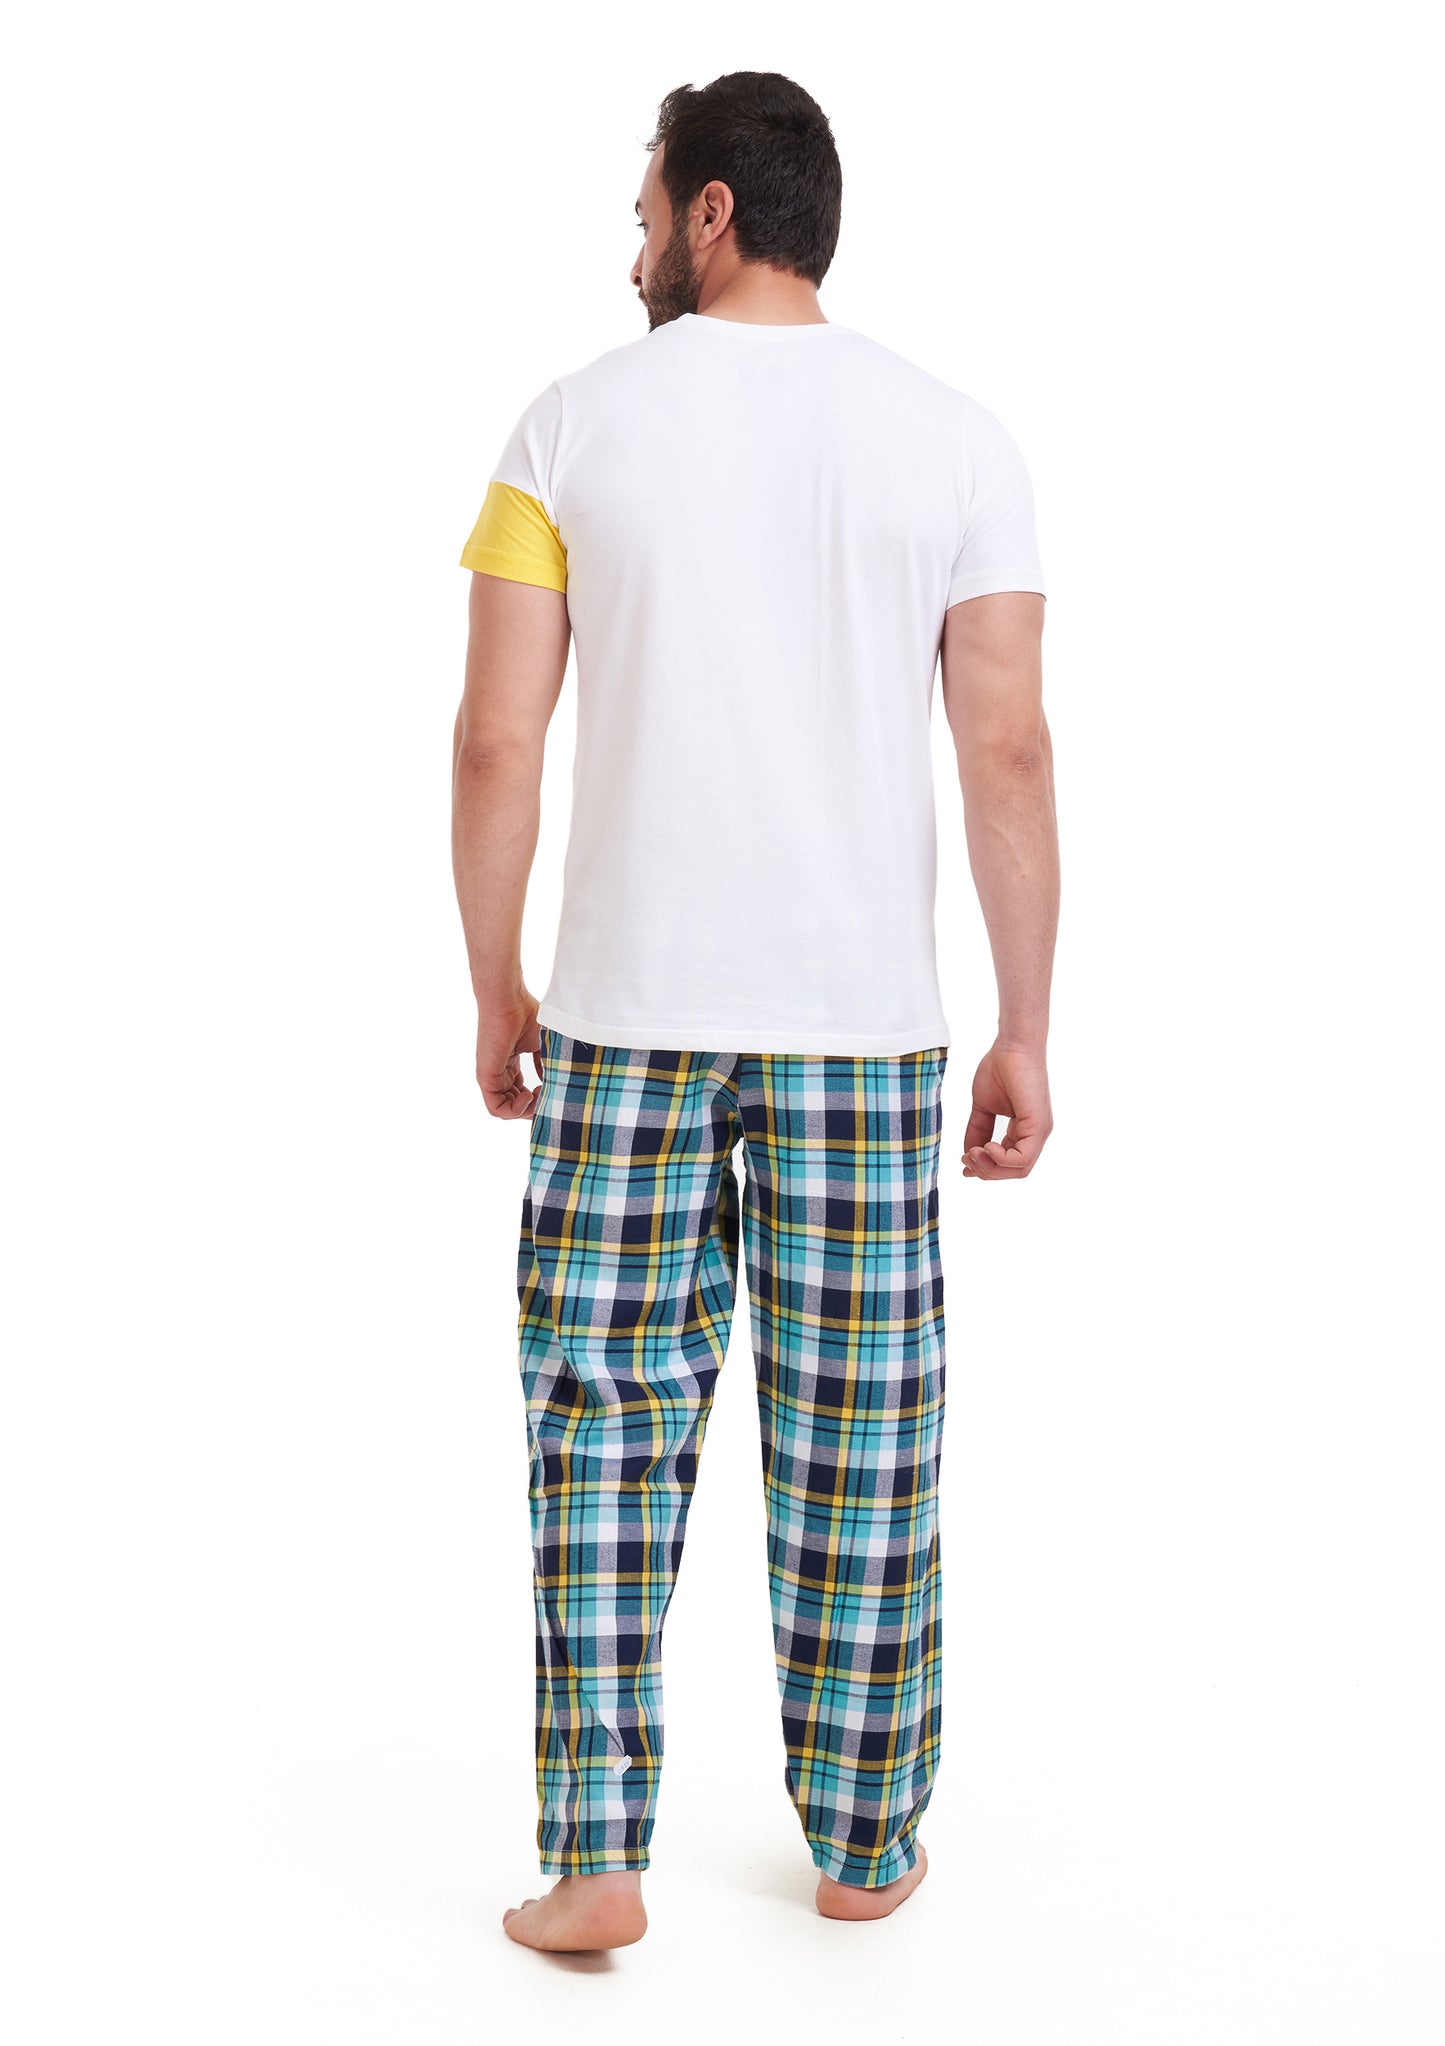 Yellow Checkered pajama